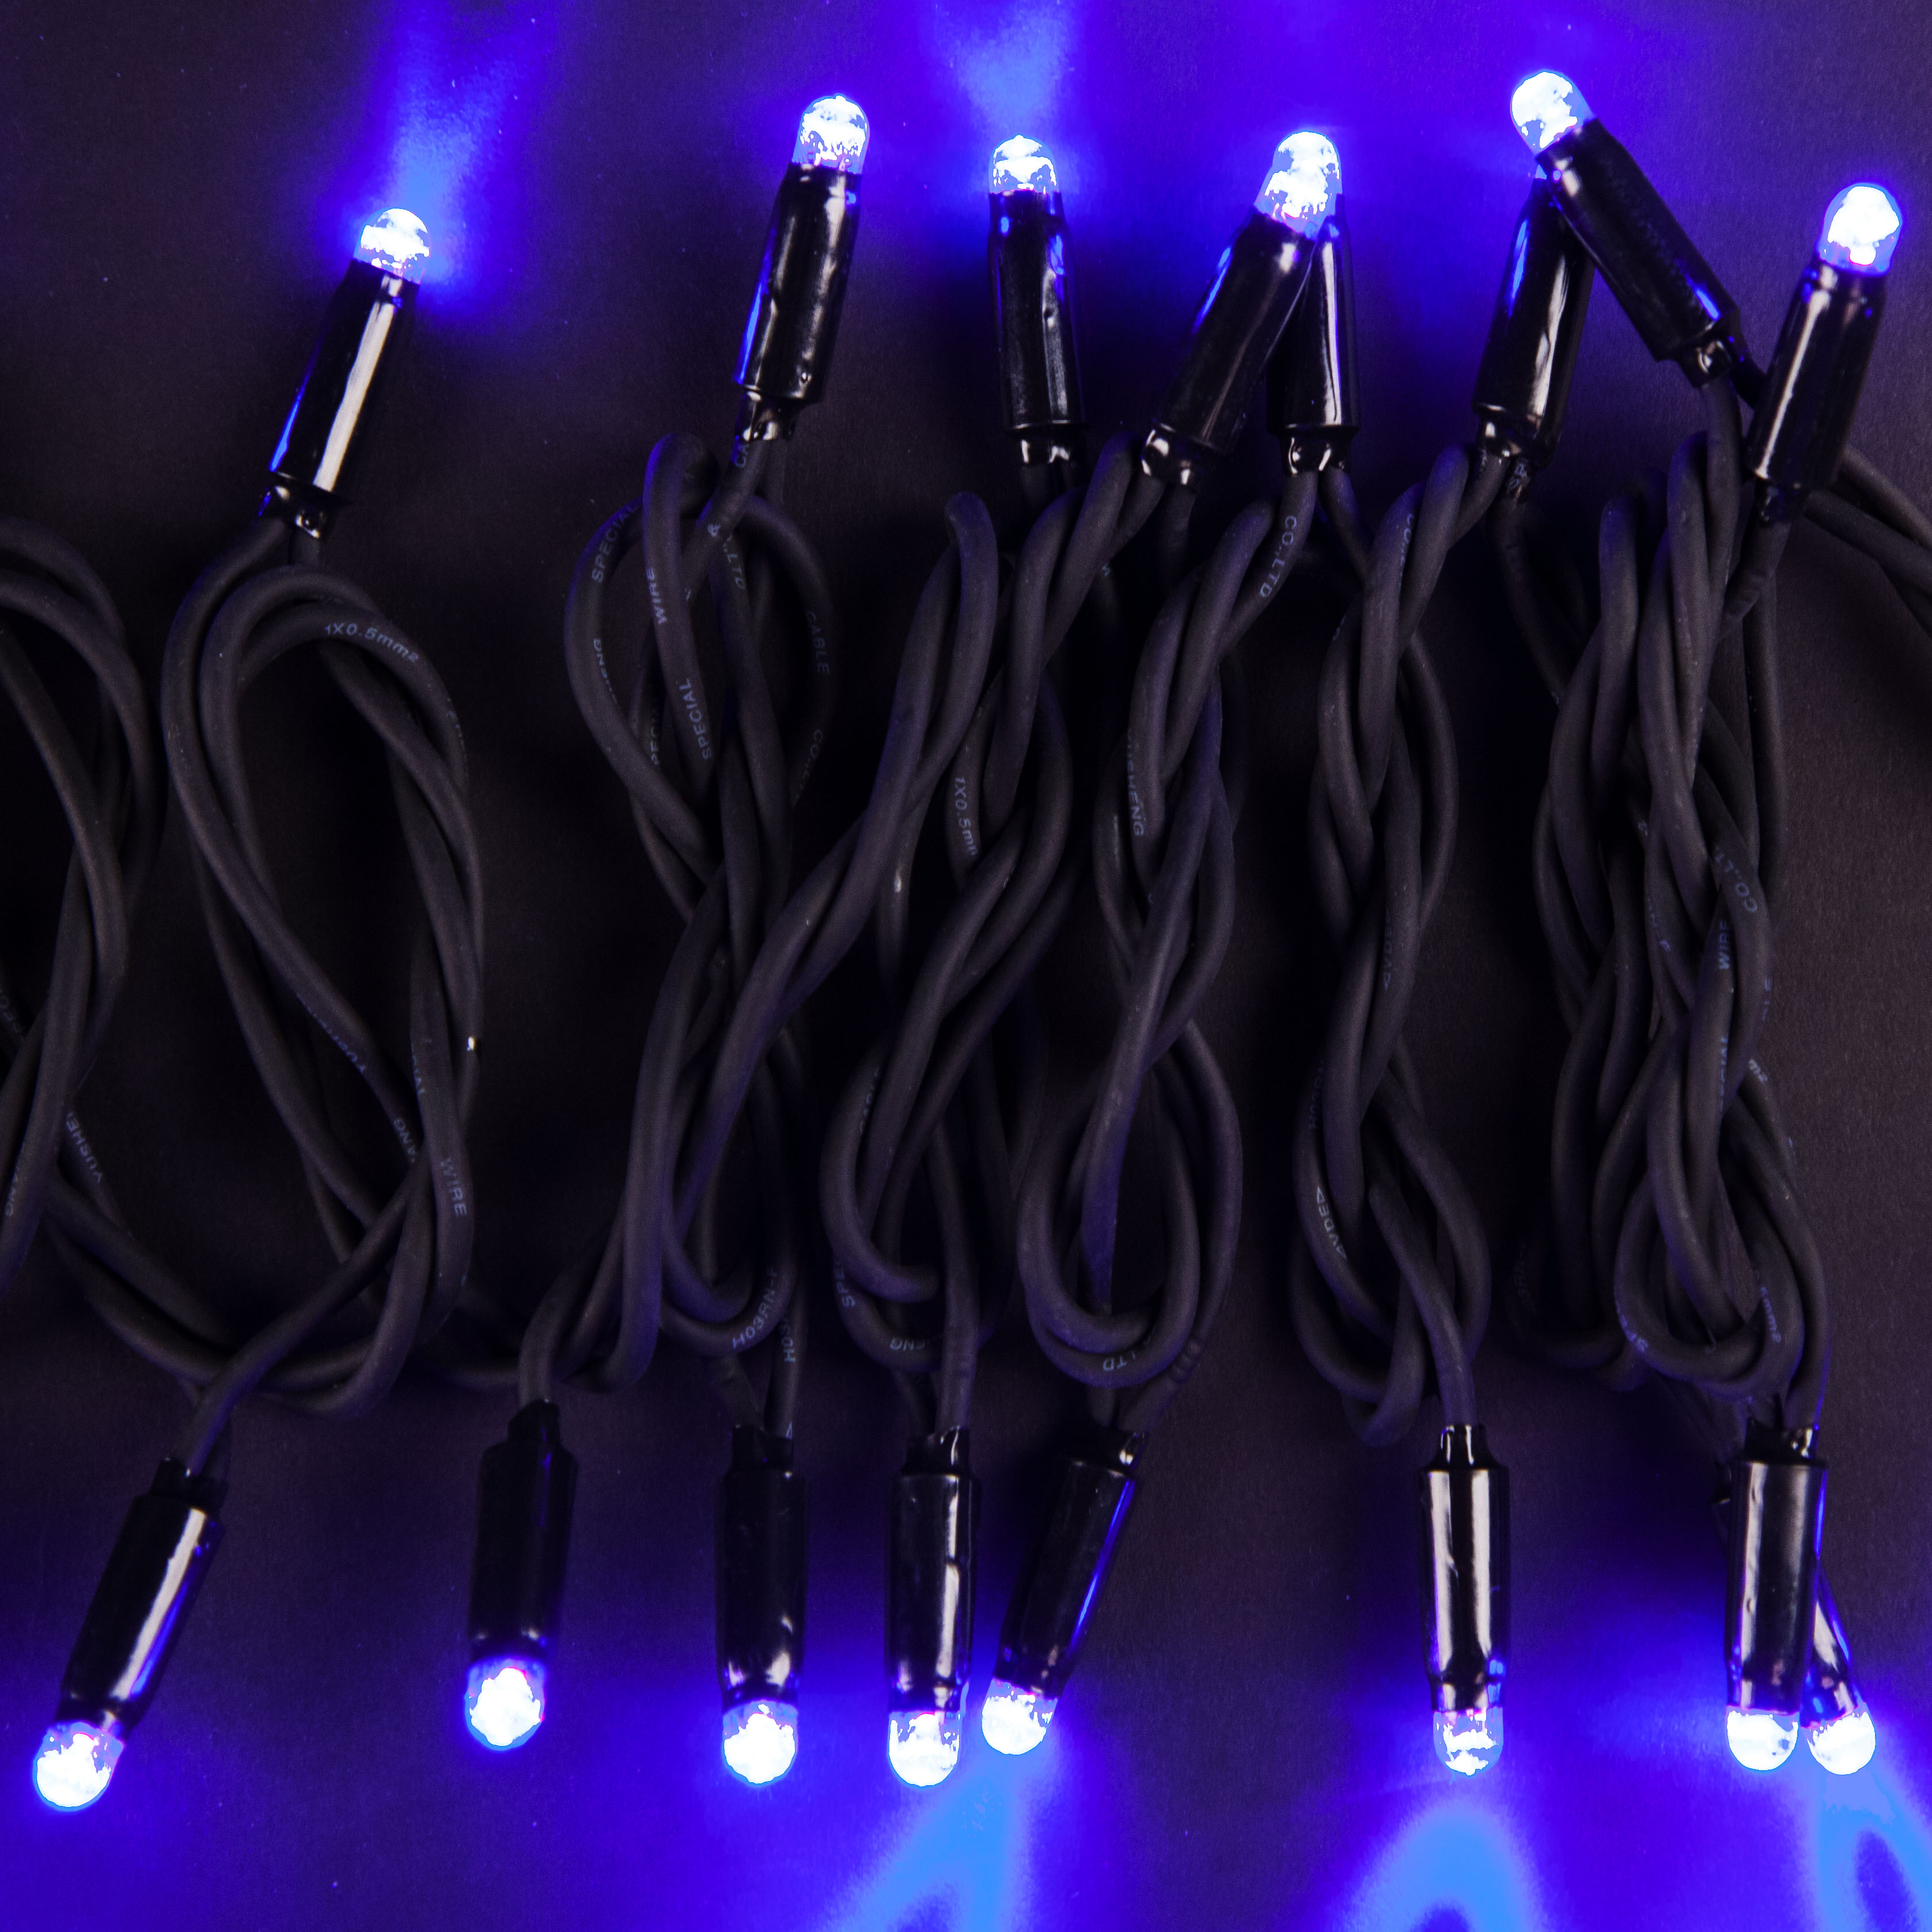 Электрогирлянда Star Trading 50 LED-ламп (465-01-TD-V), цвет фиолетовый - фото 4